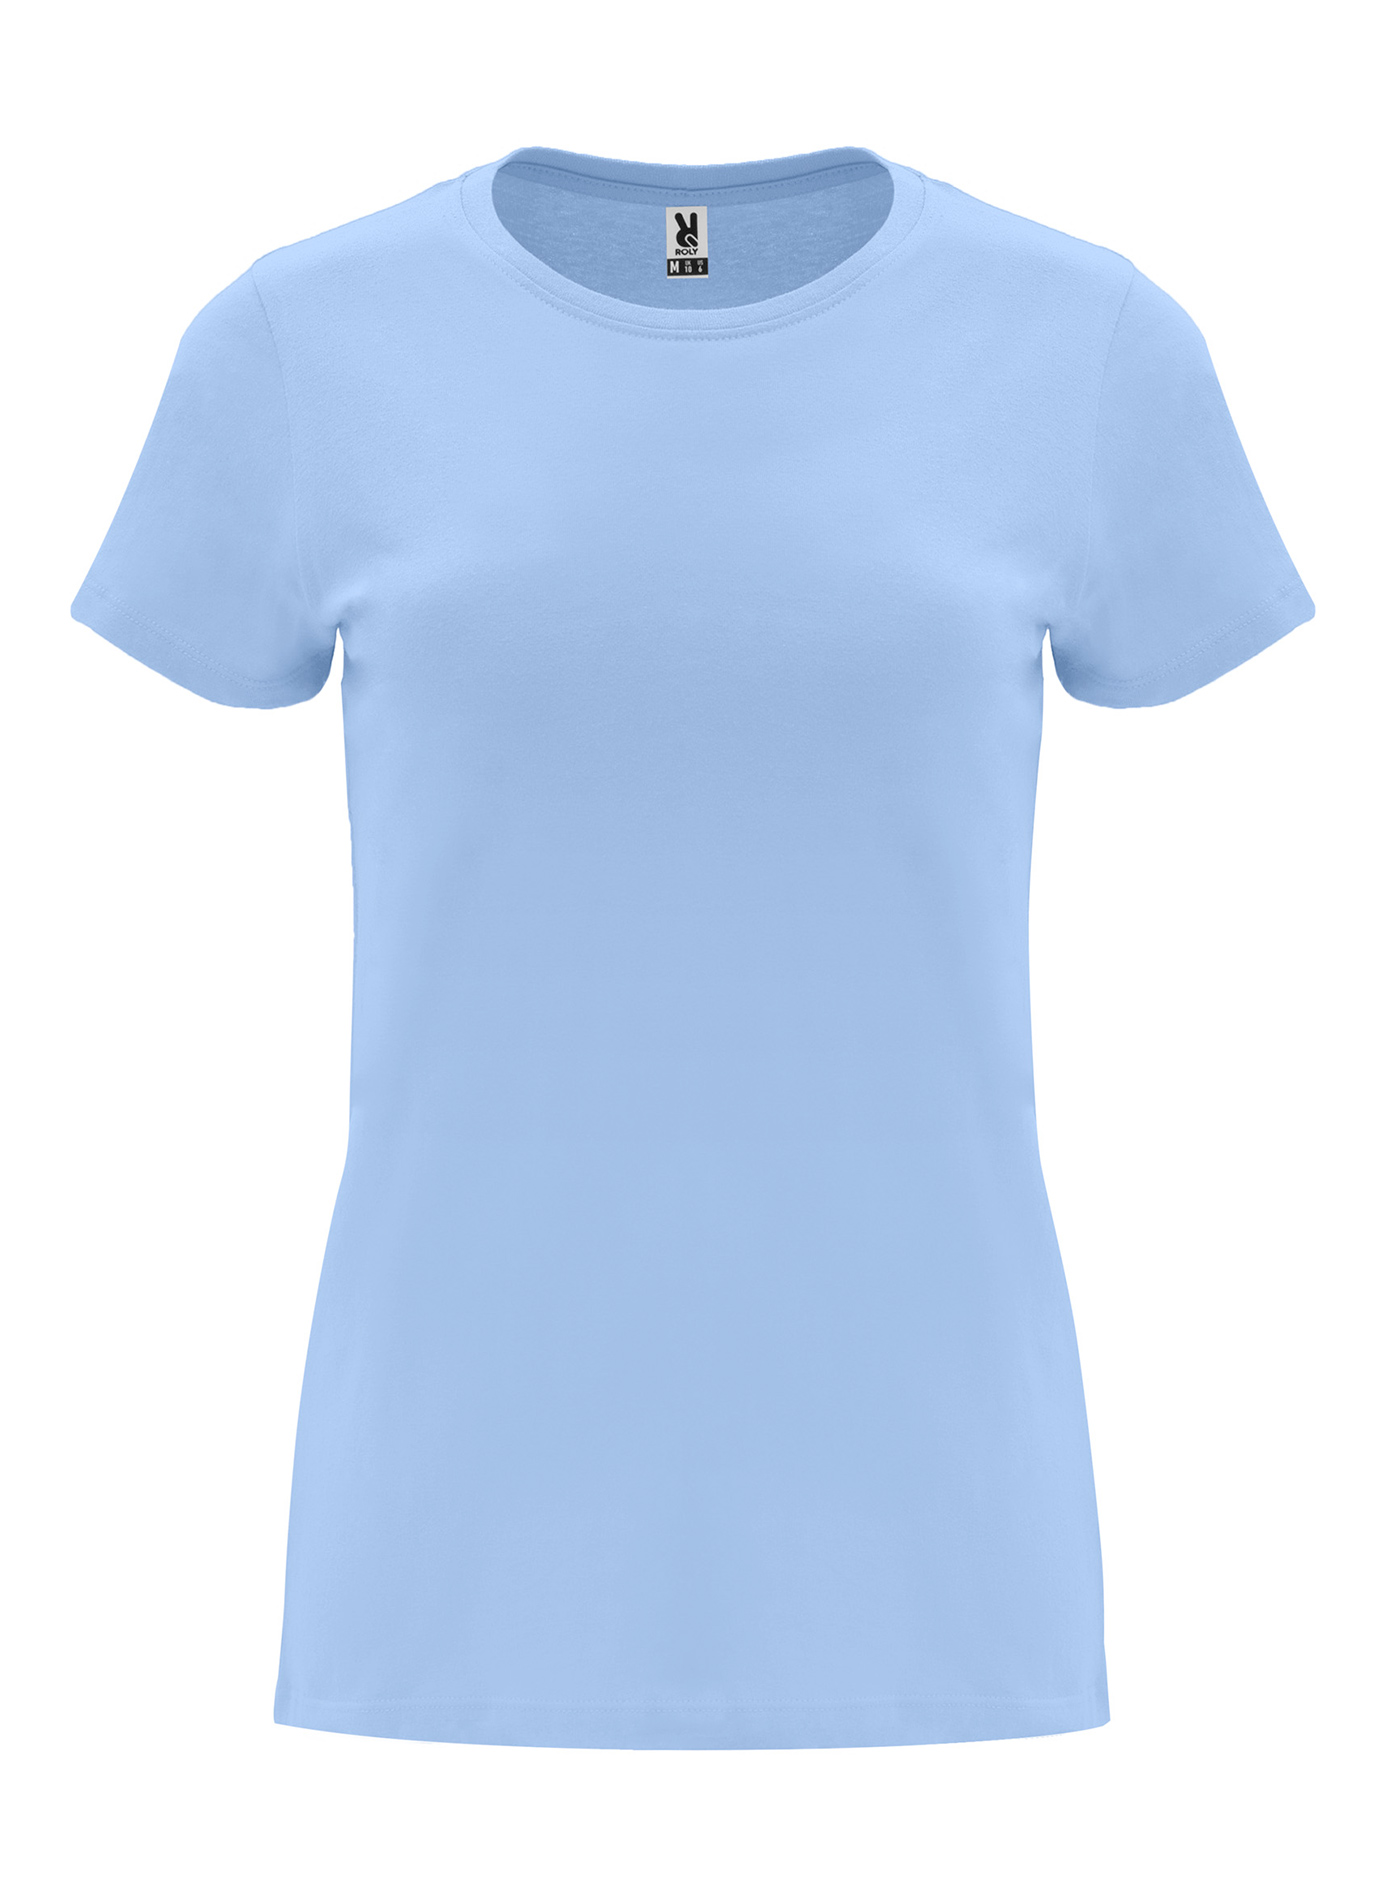 Dámské tričko Roly Capri - Blankytně modrá XXL